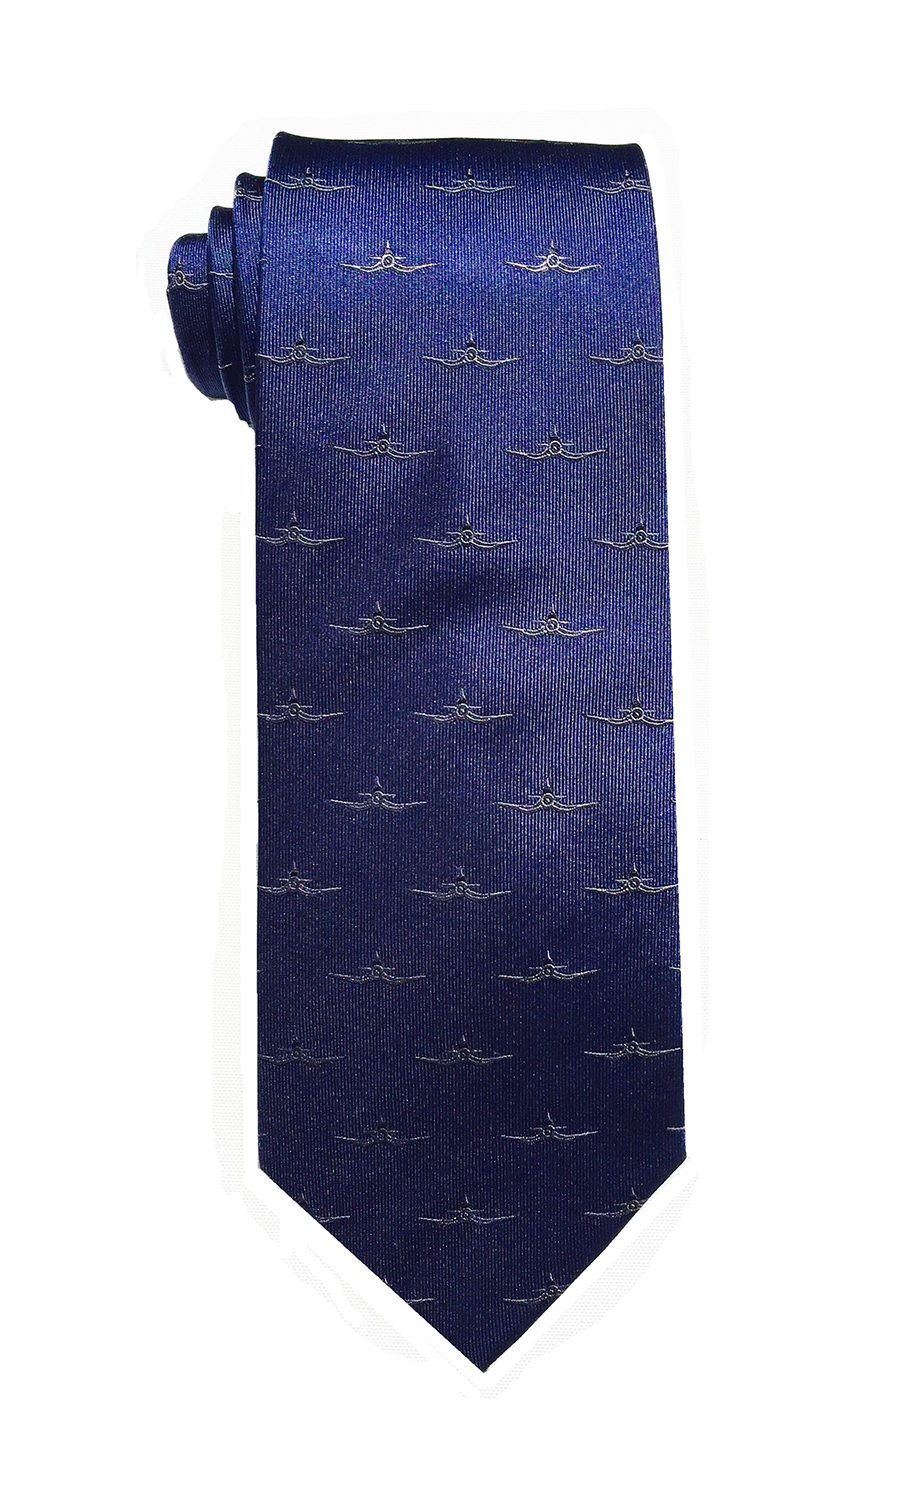 Corsair tie in deep blue